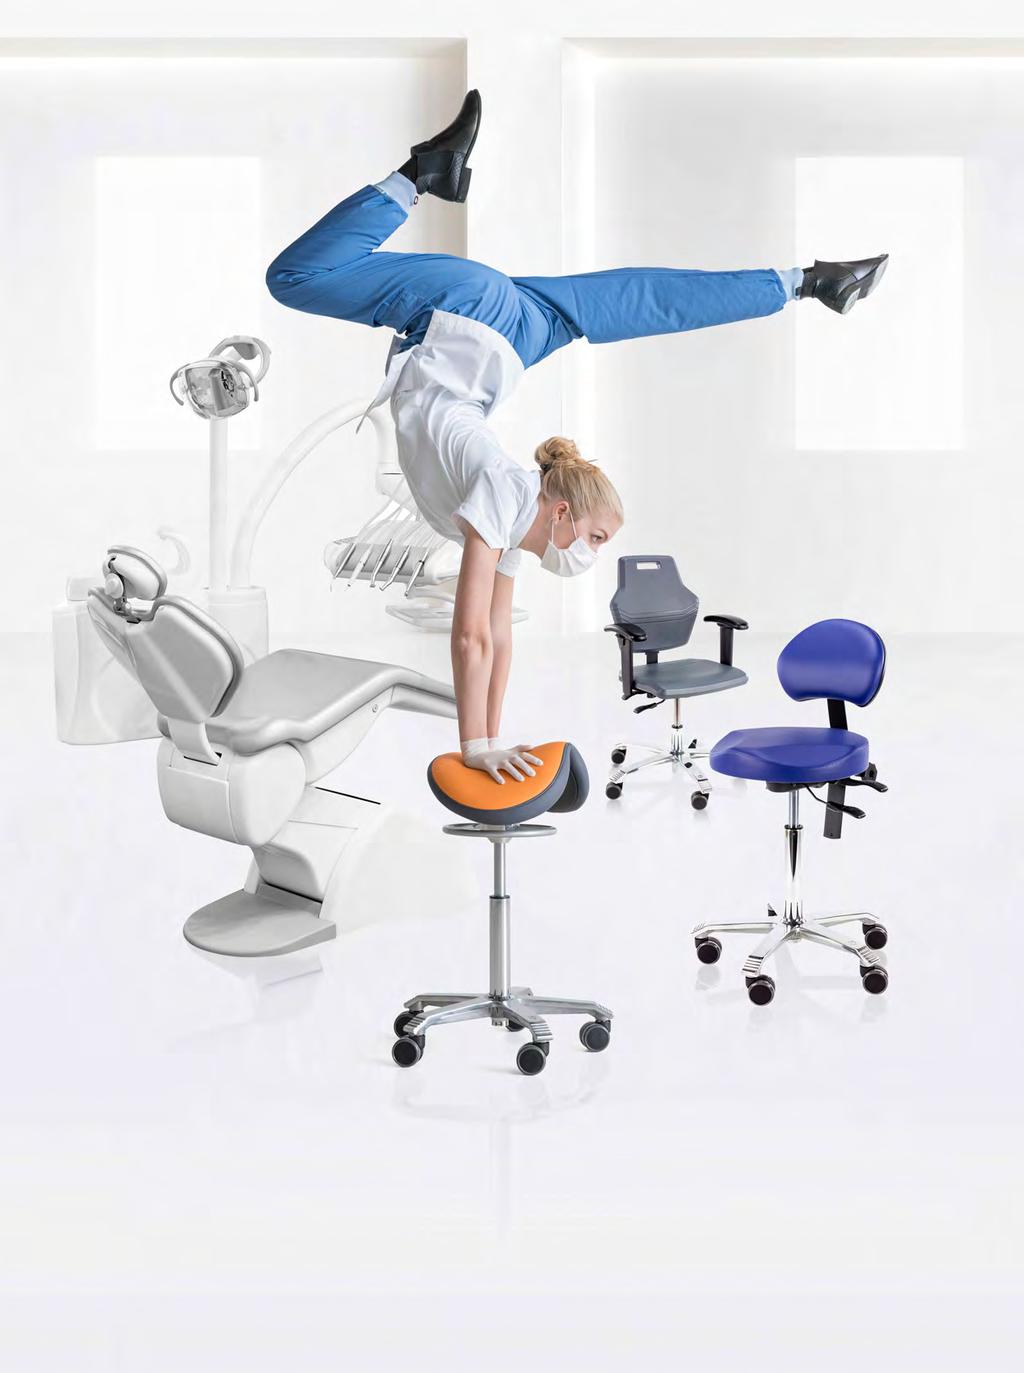 sit healthy, work comfortable Als mondzorgprofessional hoef je je niet in de vreemdste bochten te wringen om patiënten